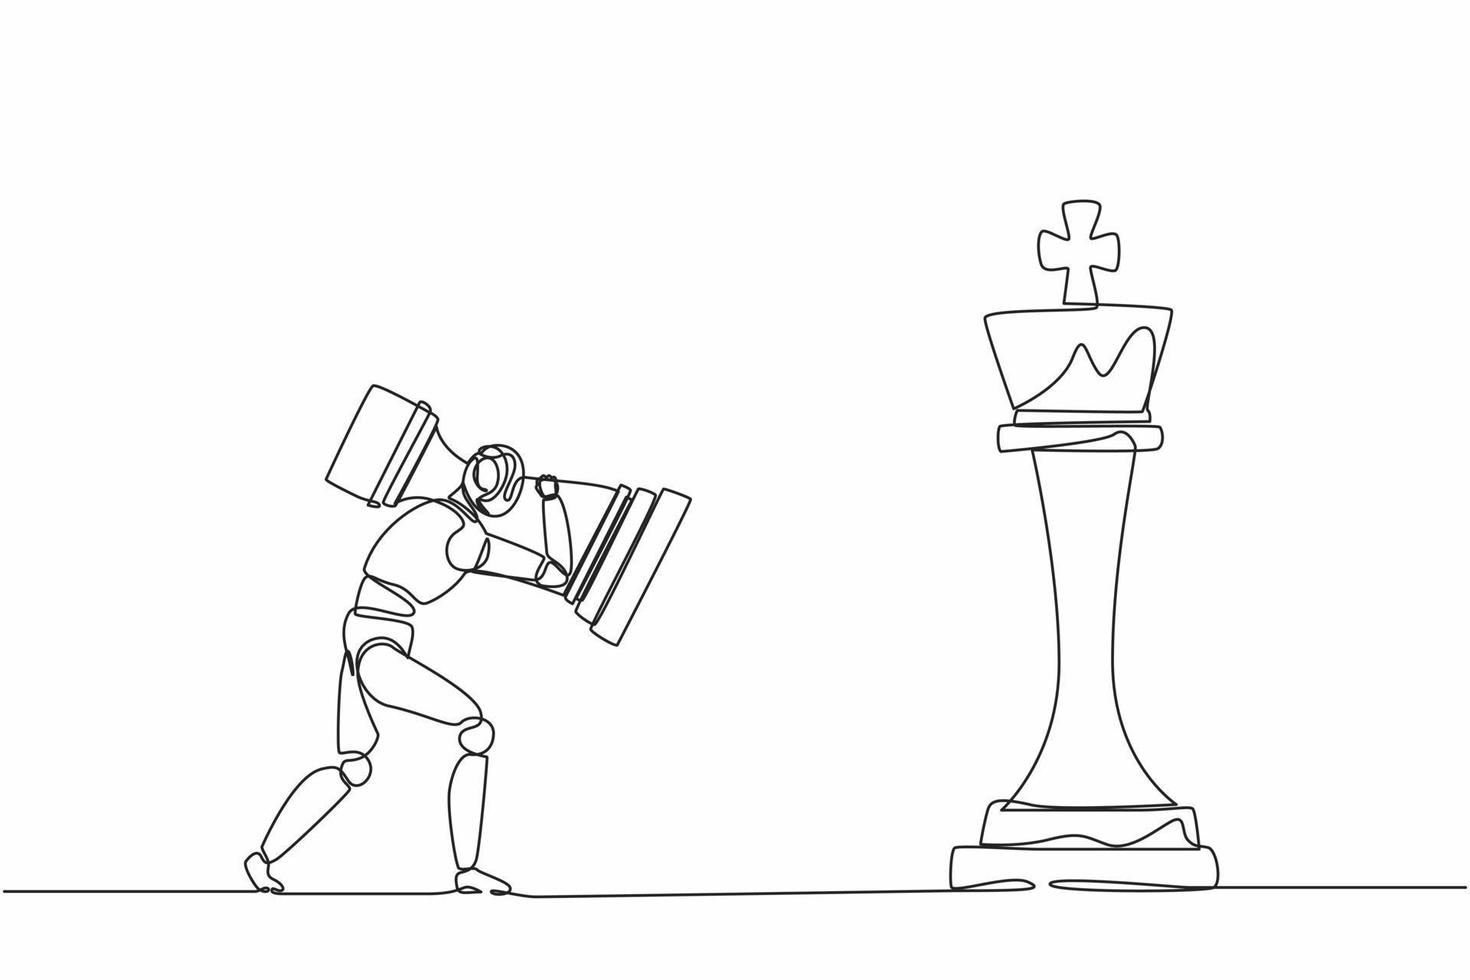 design plano gráfico desenho robô segurando peça de xadrez de torre para  vencer o xadrez do rei. plano de jogo de movimento estratégico.  desenvolvimento tecnológico futuro. inteligência artificial. ilustração  vetorial de estilo